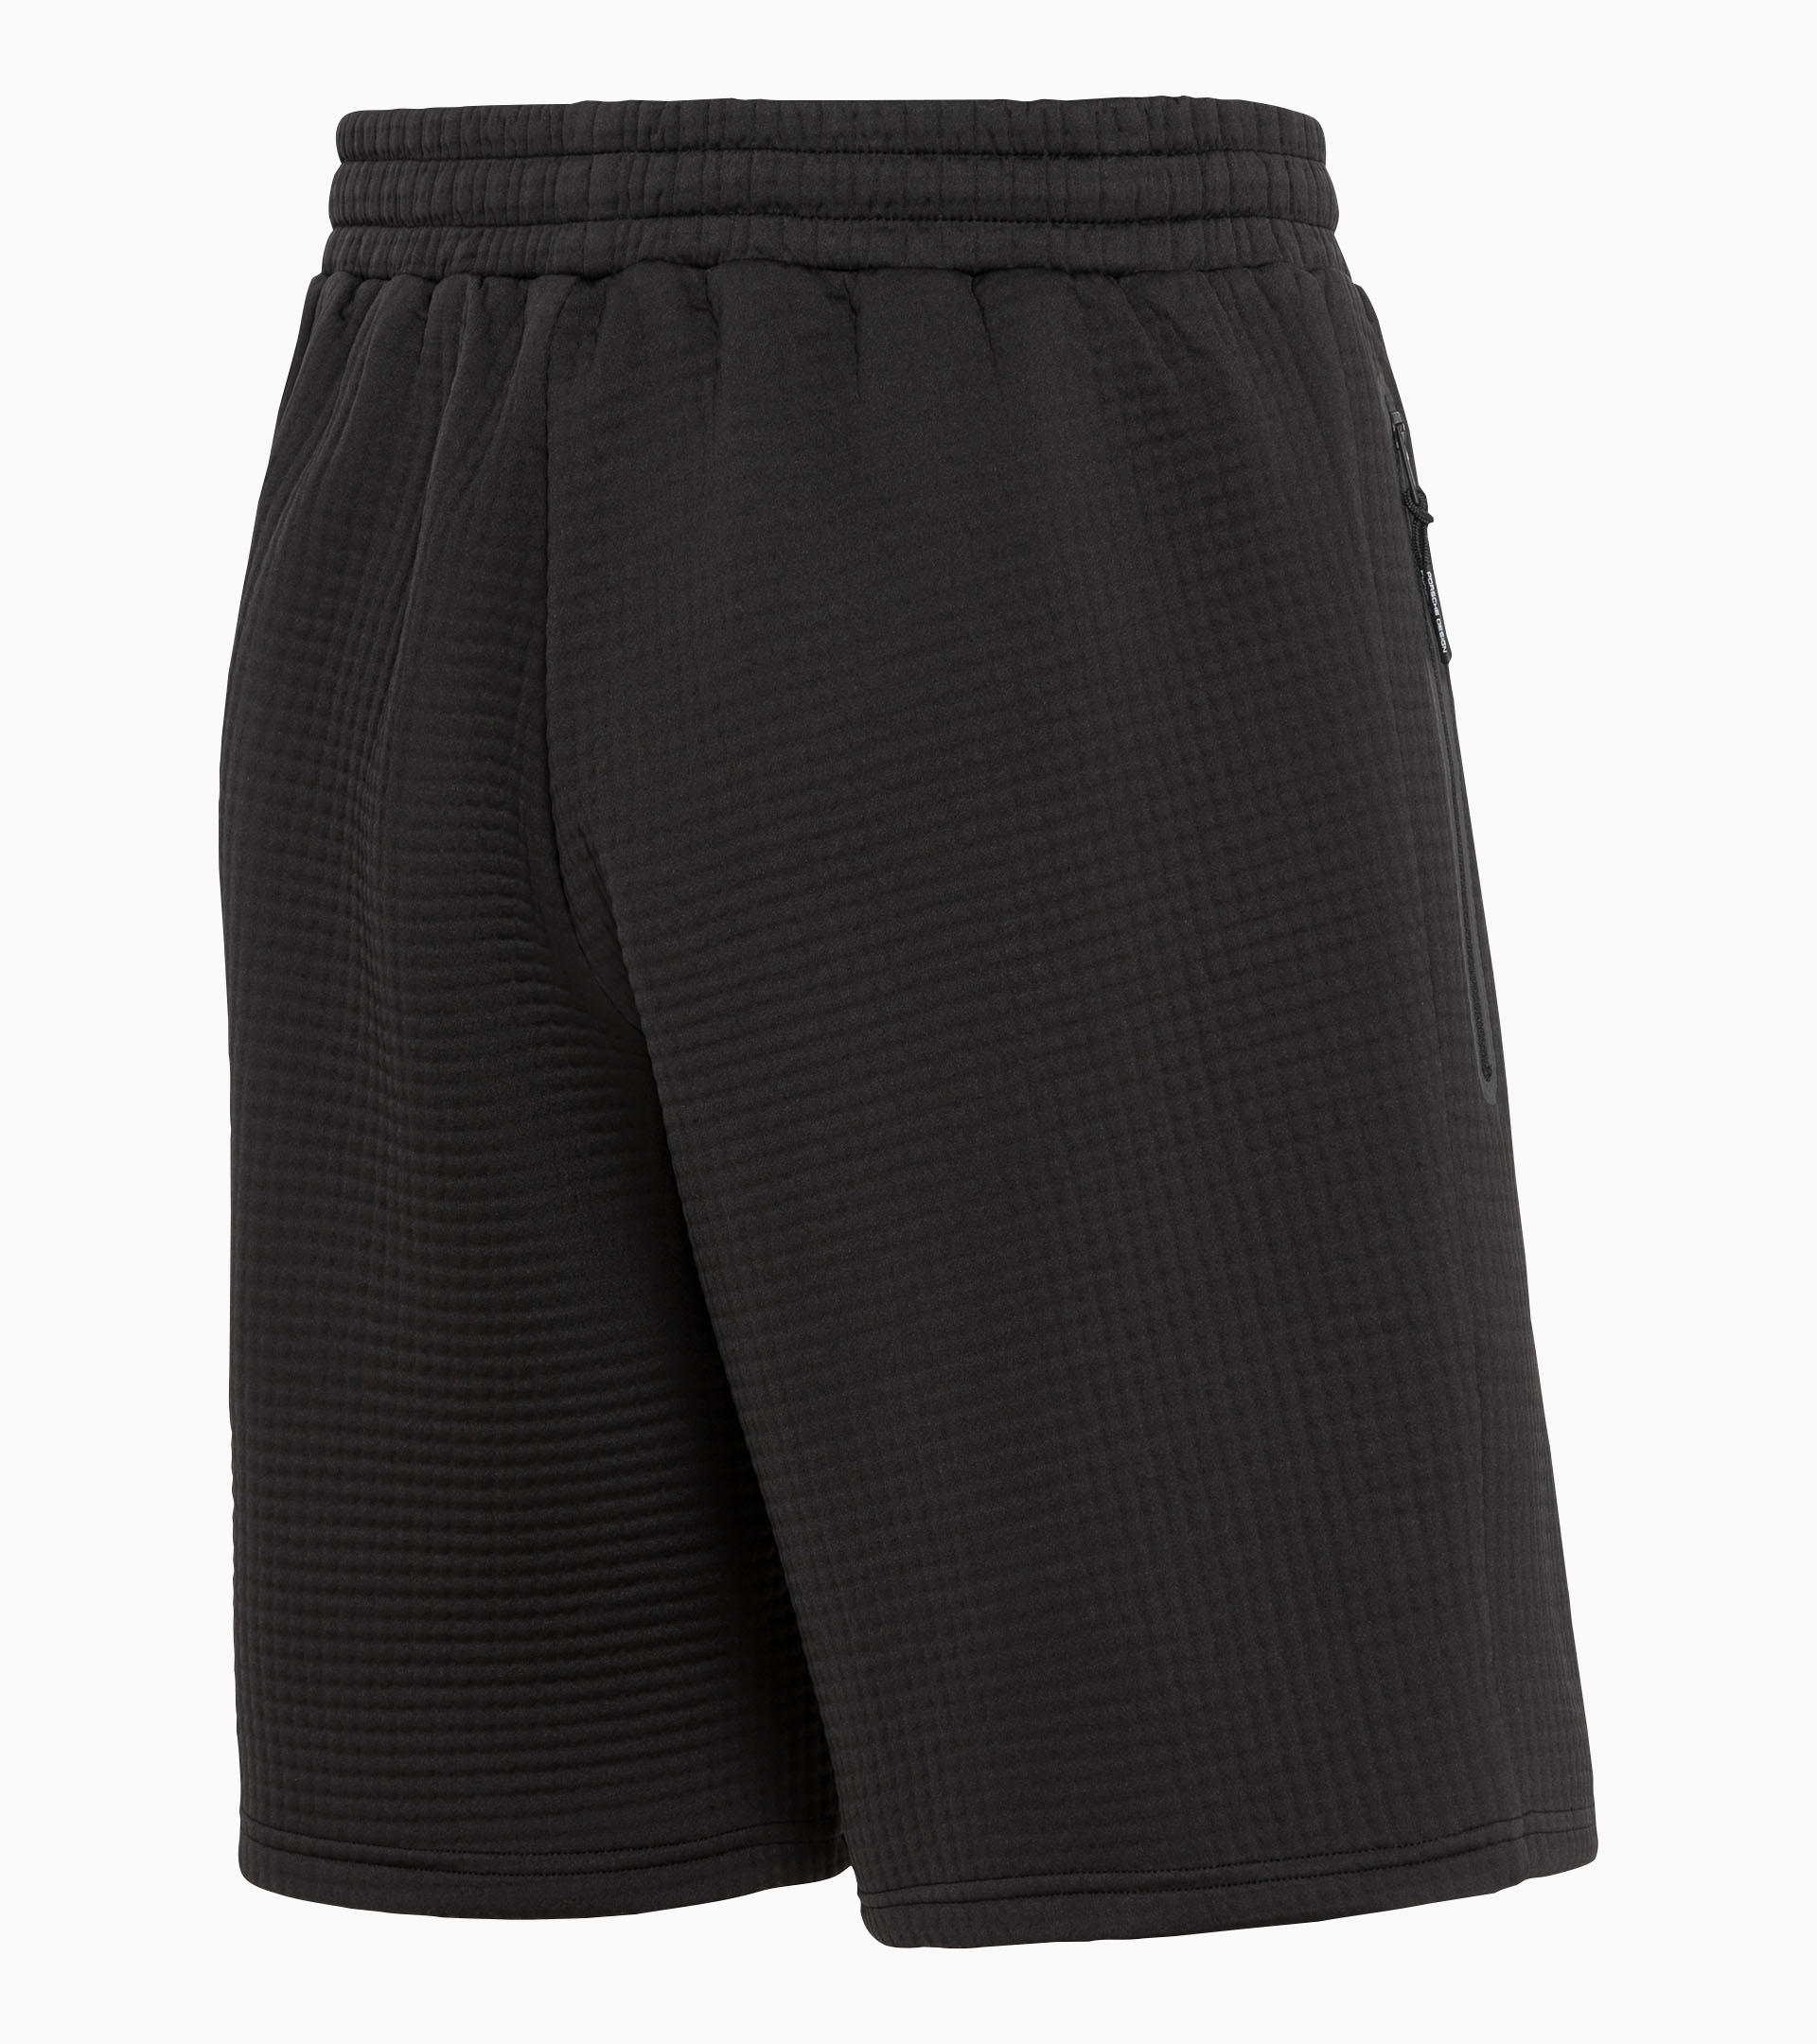 Sweat shorts - Exclusive Sports Pants for Men | Porsche Design 